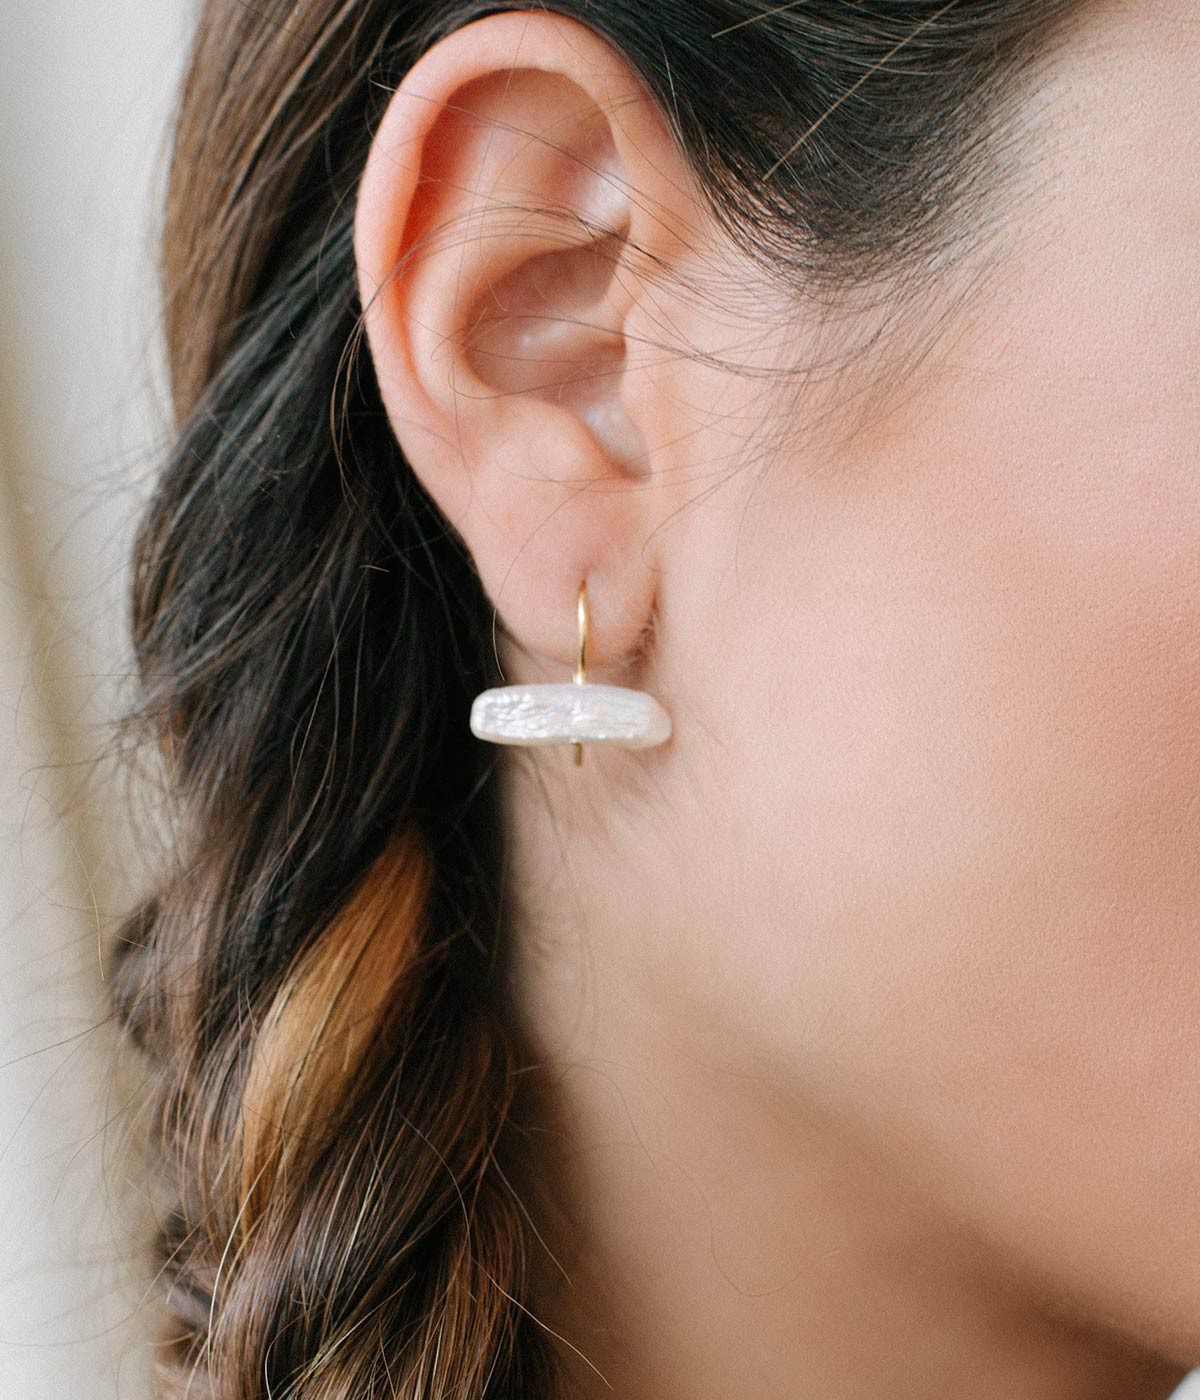 Fresh water earrings